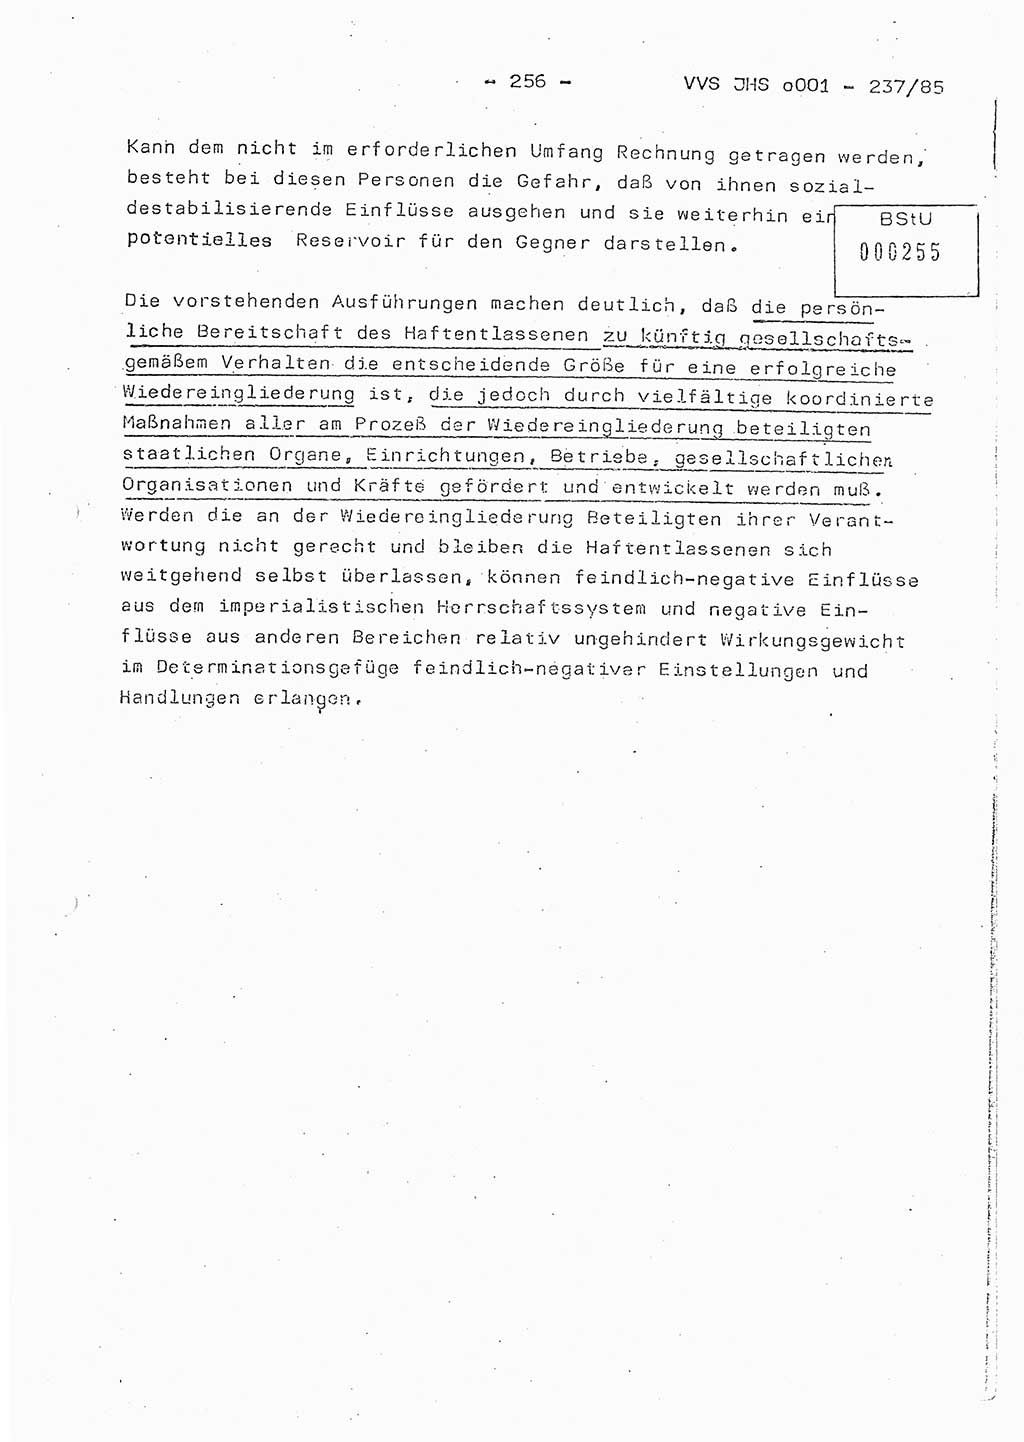 Dissertation Oberstleutnant Peter Jakulski (JHS), Oberstleutnat Christian Rudolph (HA Ⅸ), Major Horst Böttger (ZMD), Major Wolfgang Grüneberg (JHS), Major Albert Meutsch (JHS), Ministerium für Staatssicherheit (MfS) [Deutsche Demokratische Republik (DDR)], Juristische Hochschule (JHS), Vertrauliche Verschlußsache (VVS) o001-237/85, Potsdam 1985, Seite 256 (Diss. MfS DDR JHS VVS o001-237/85 1985, S. 256)